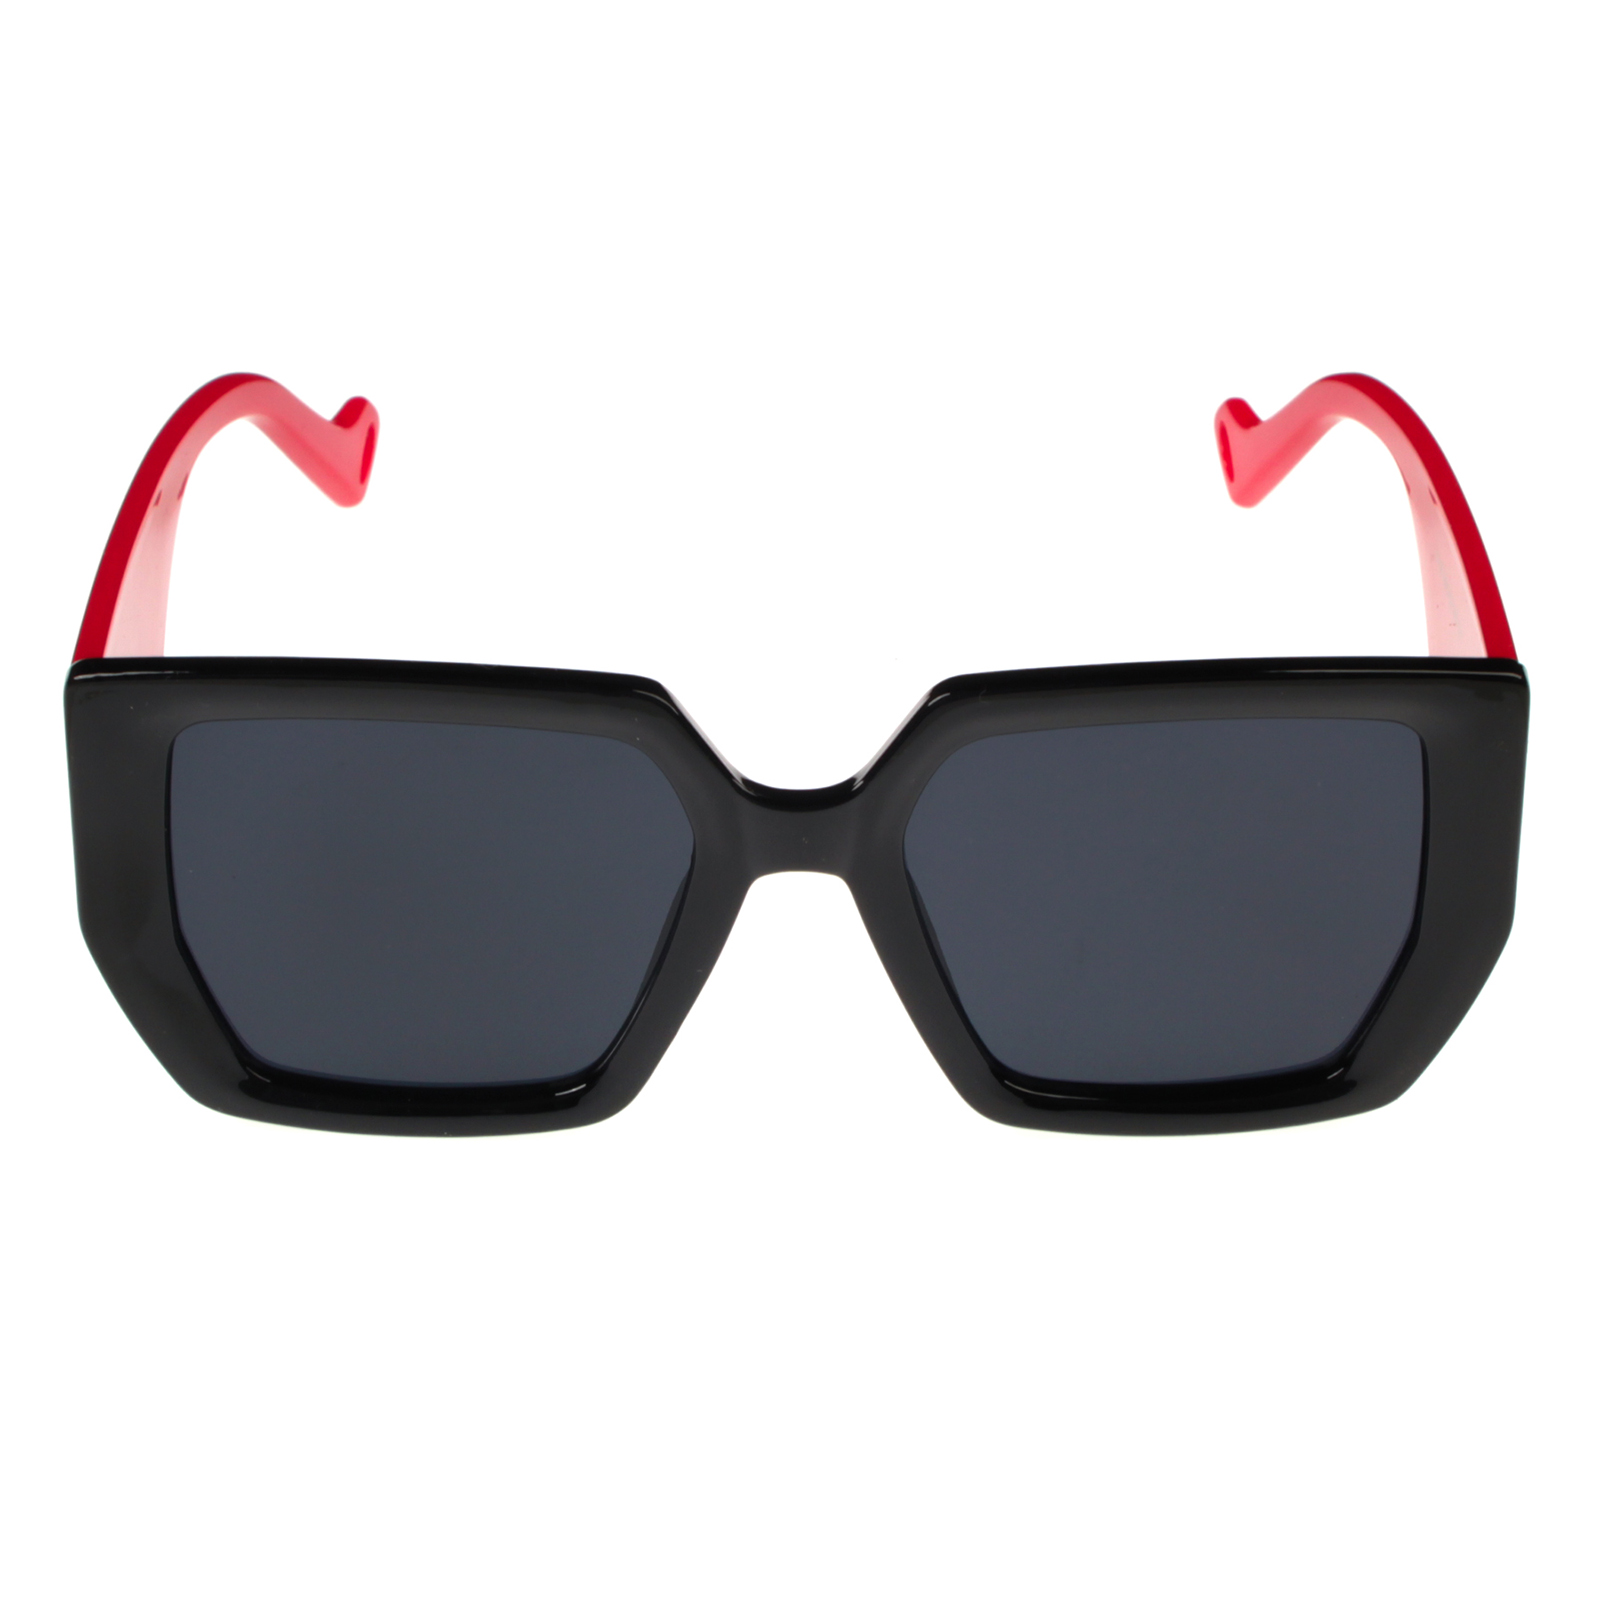 фото Солнцезащитные очки женские pretty mania dp105 черные/красные